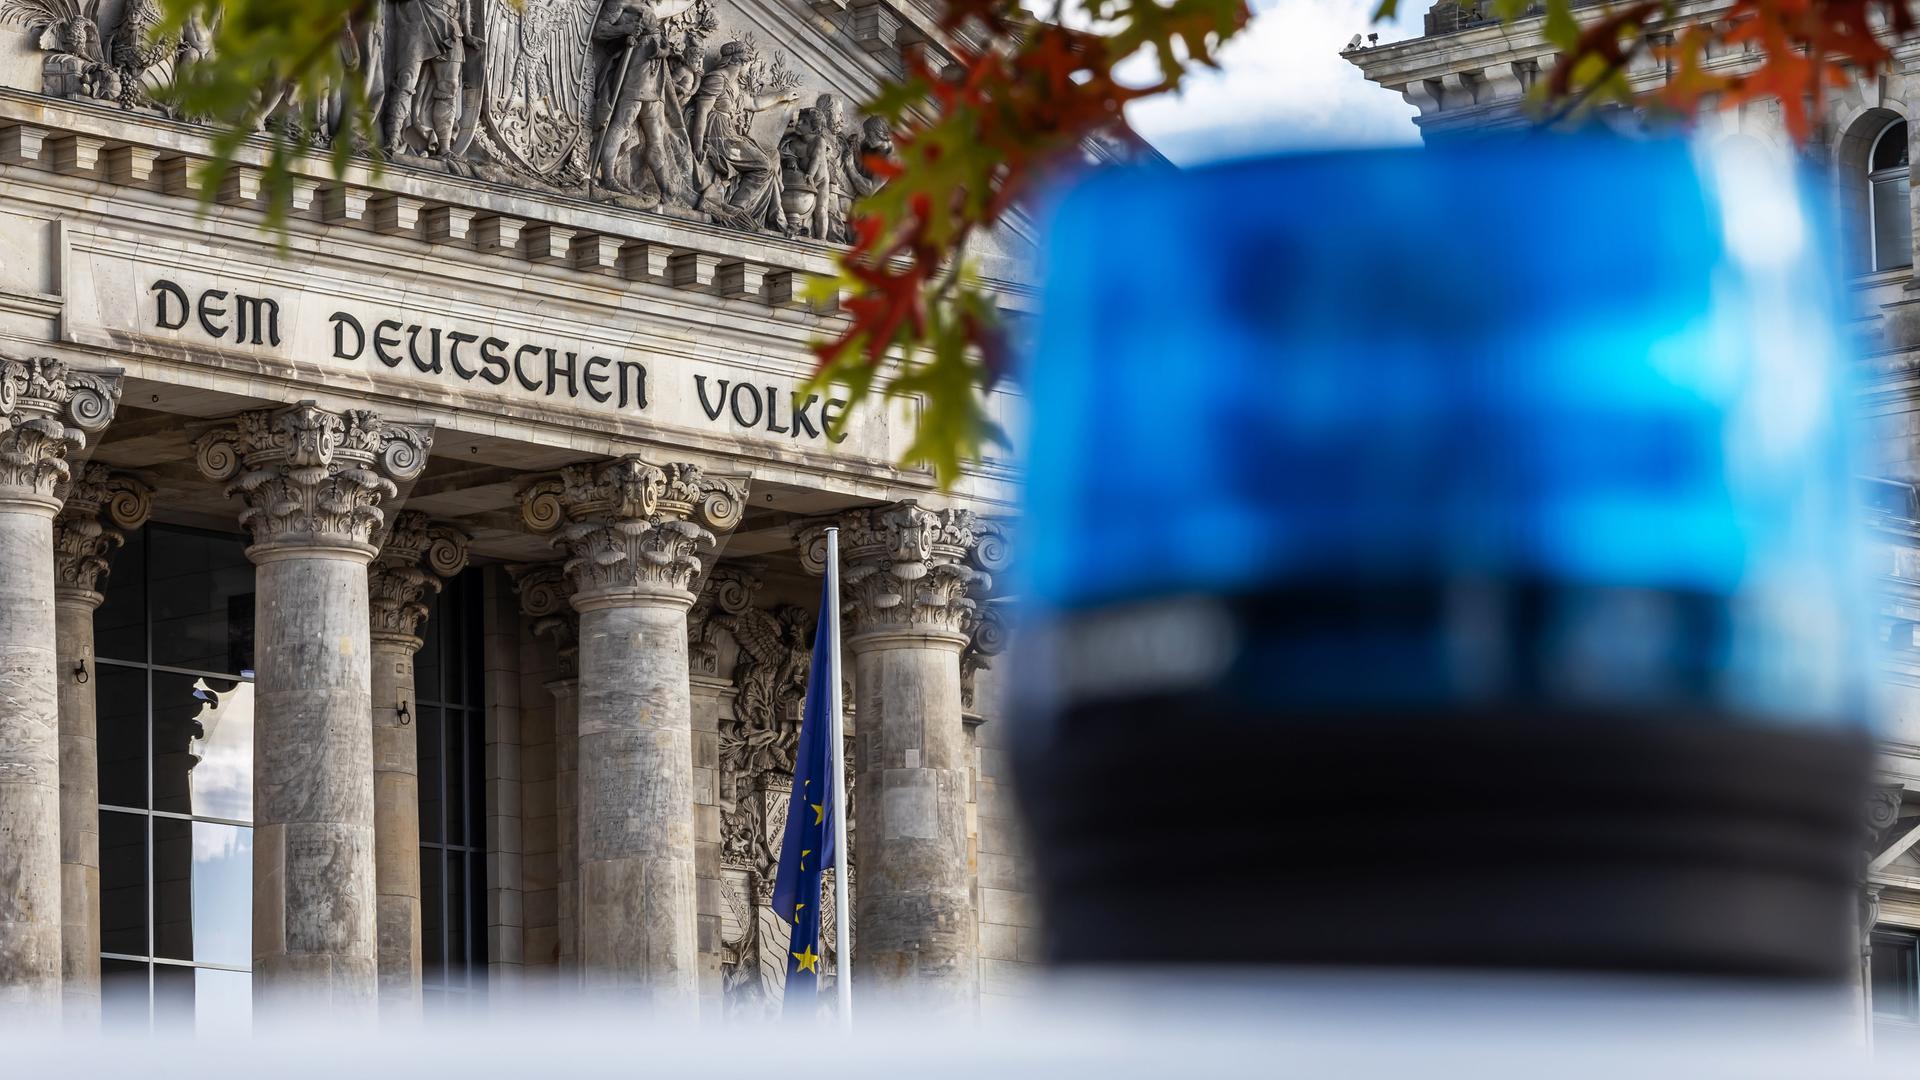 Ein Blaulicht vor dem Bundestag. Im Hintergrund steht "Dem deutschen Volke".